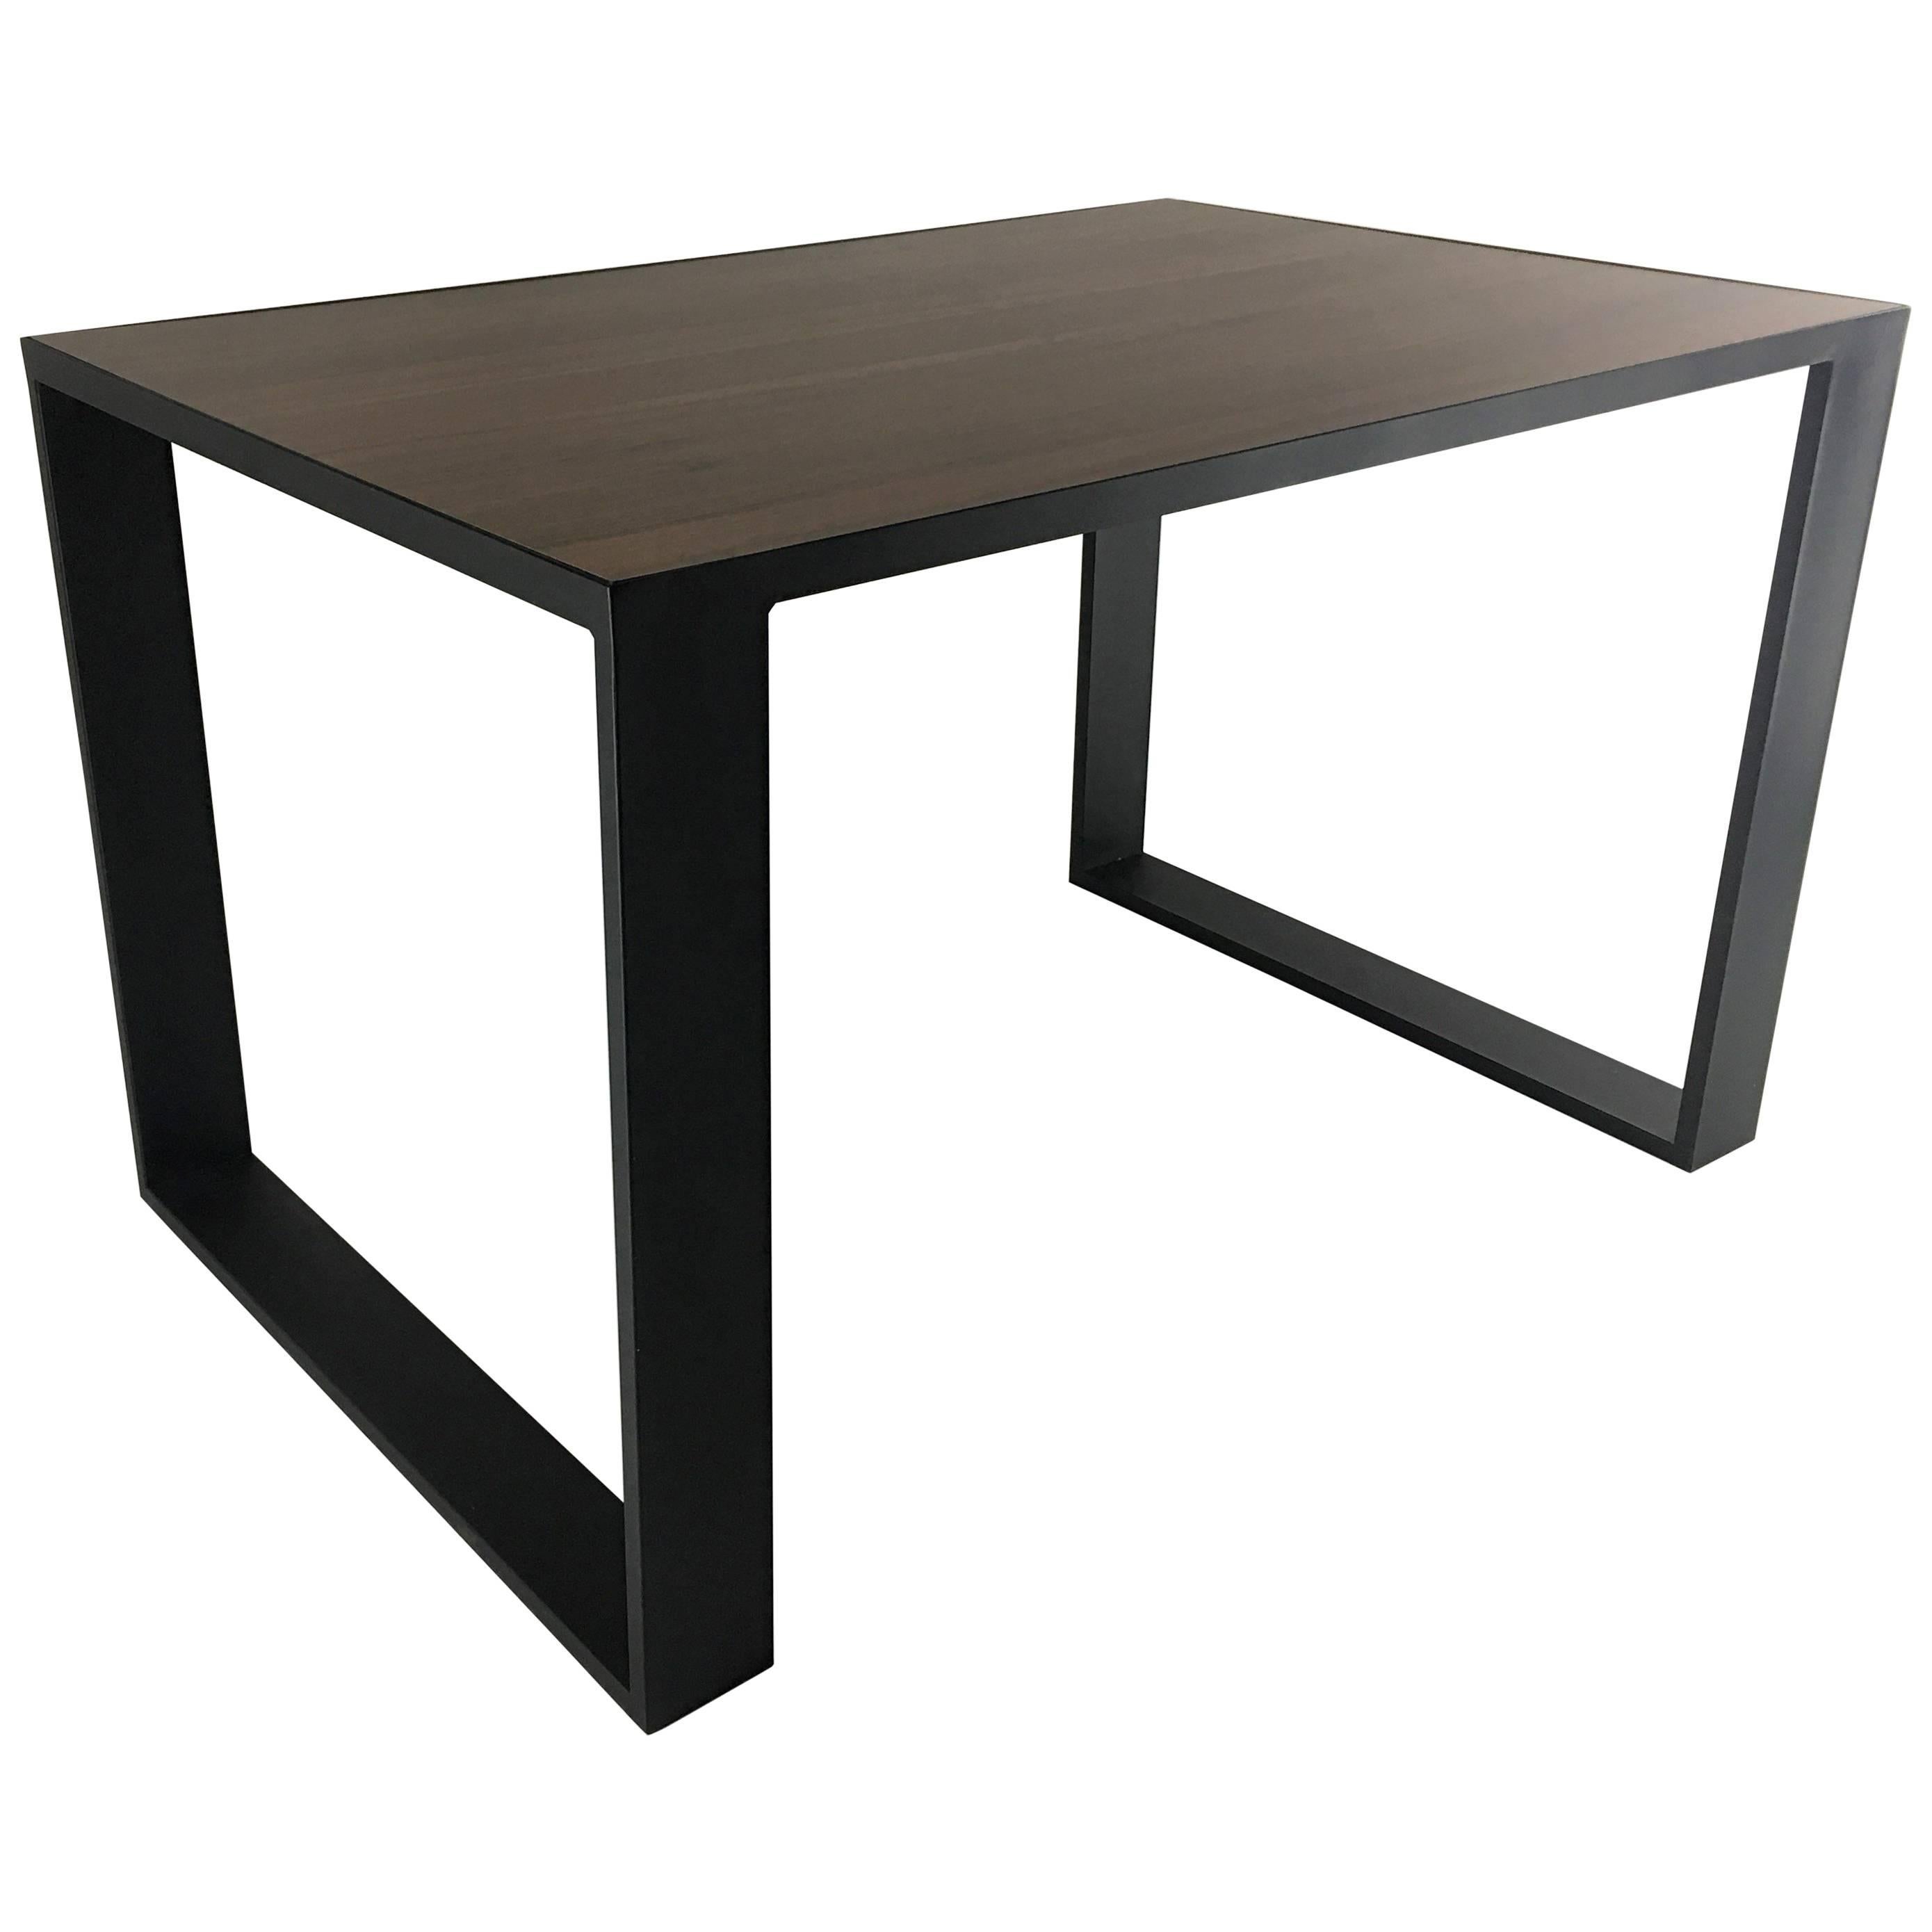 Table cubique rectangulaire en fer avec plateau en bois intégré, table de salle à manger ou table de bureau